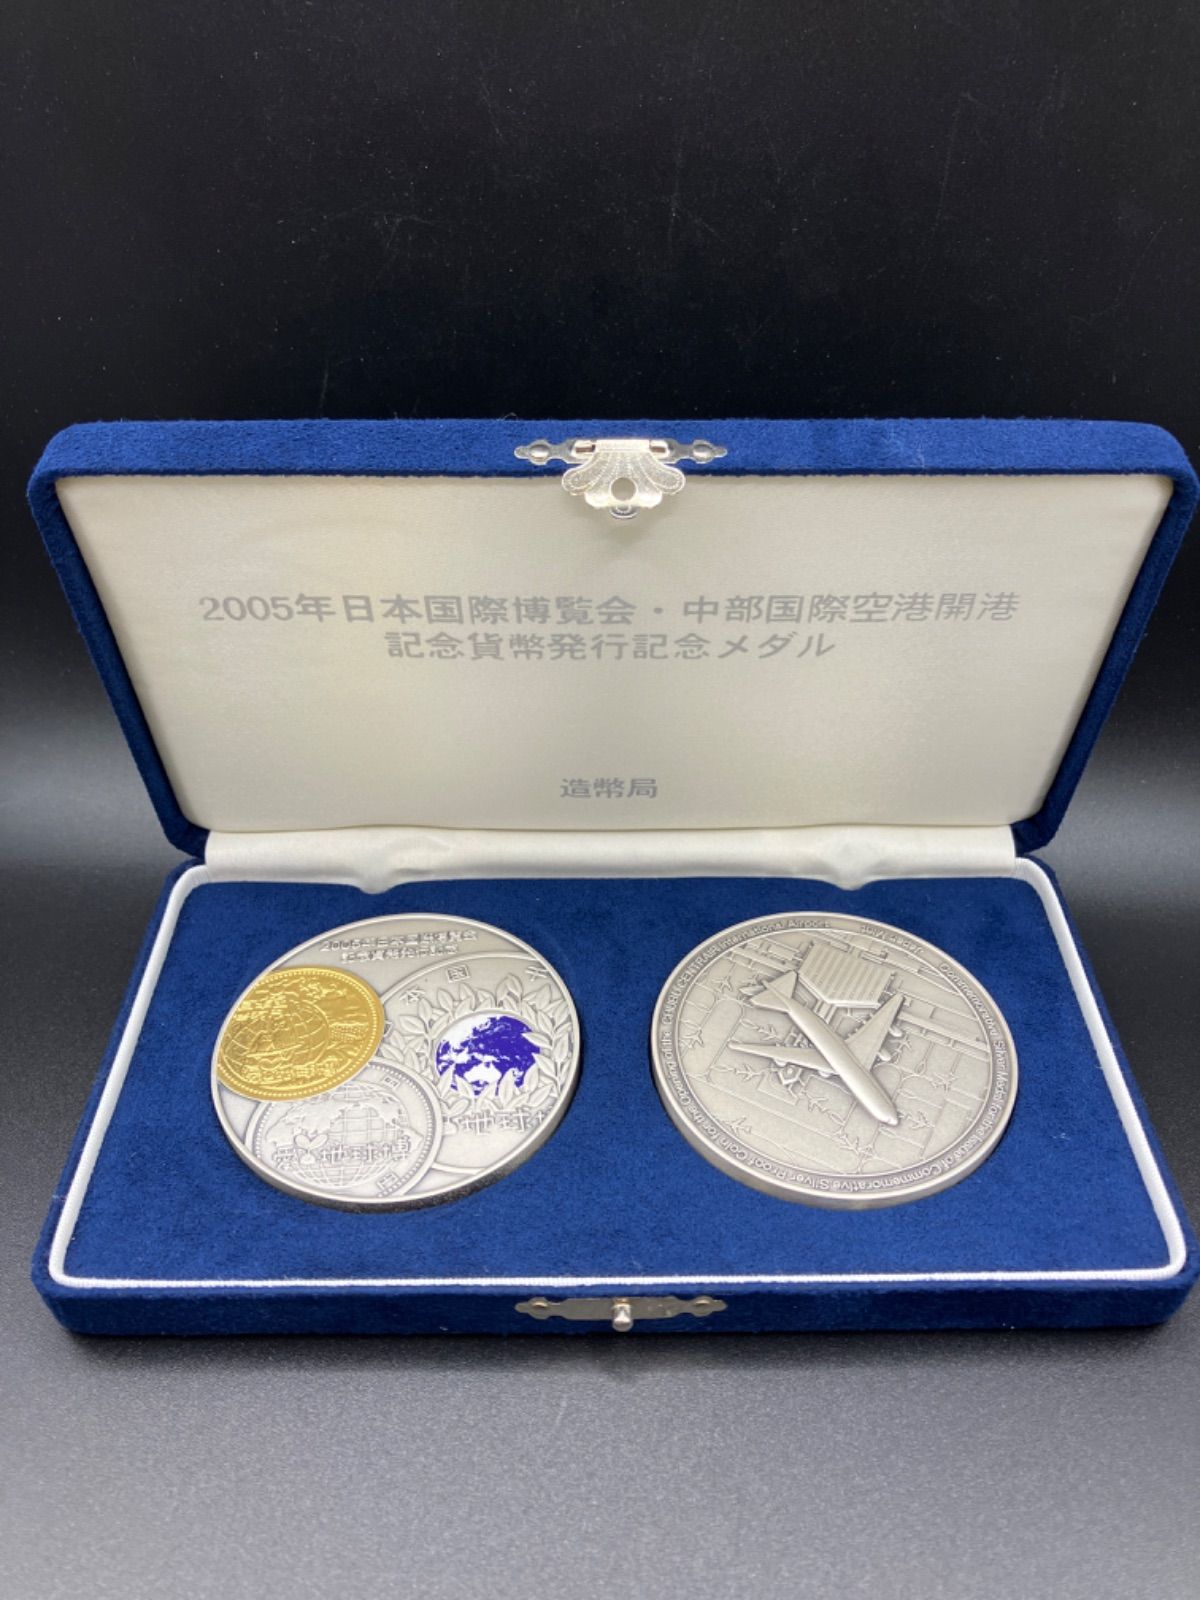 年日本国際博覧会 中部国際空港開港 記念貨幣発行記念純銀製メダル